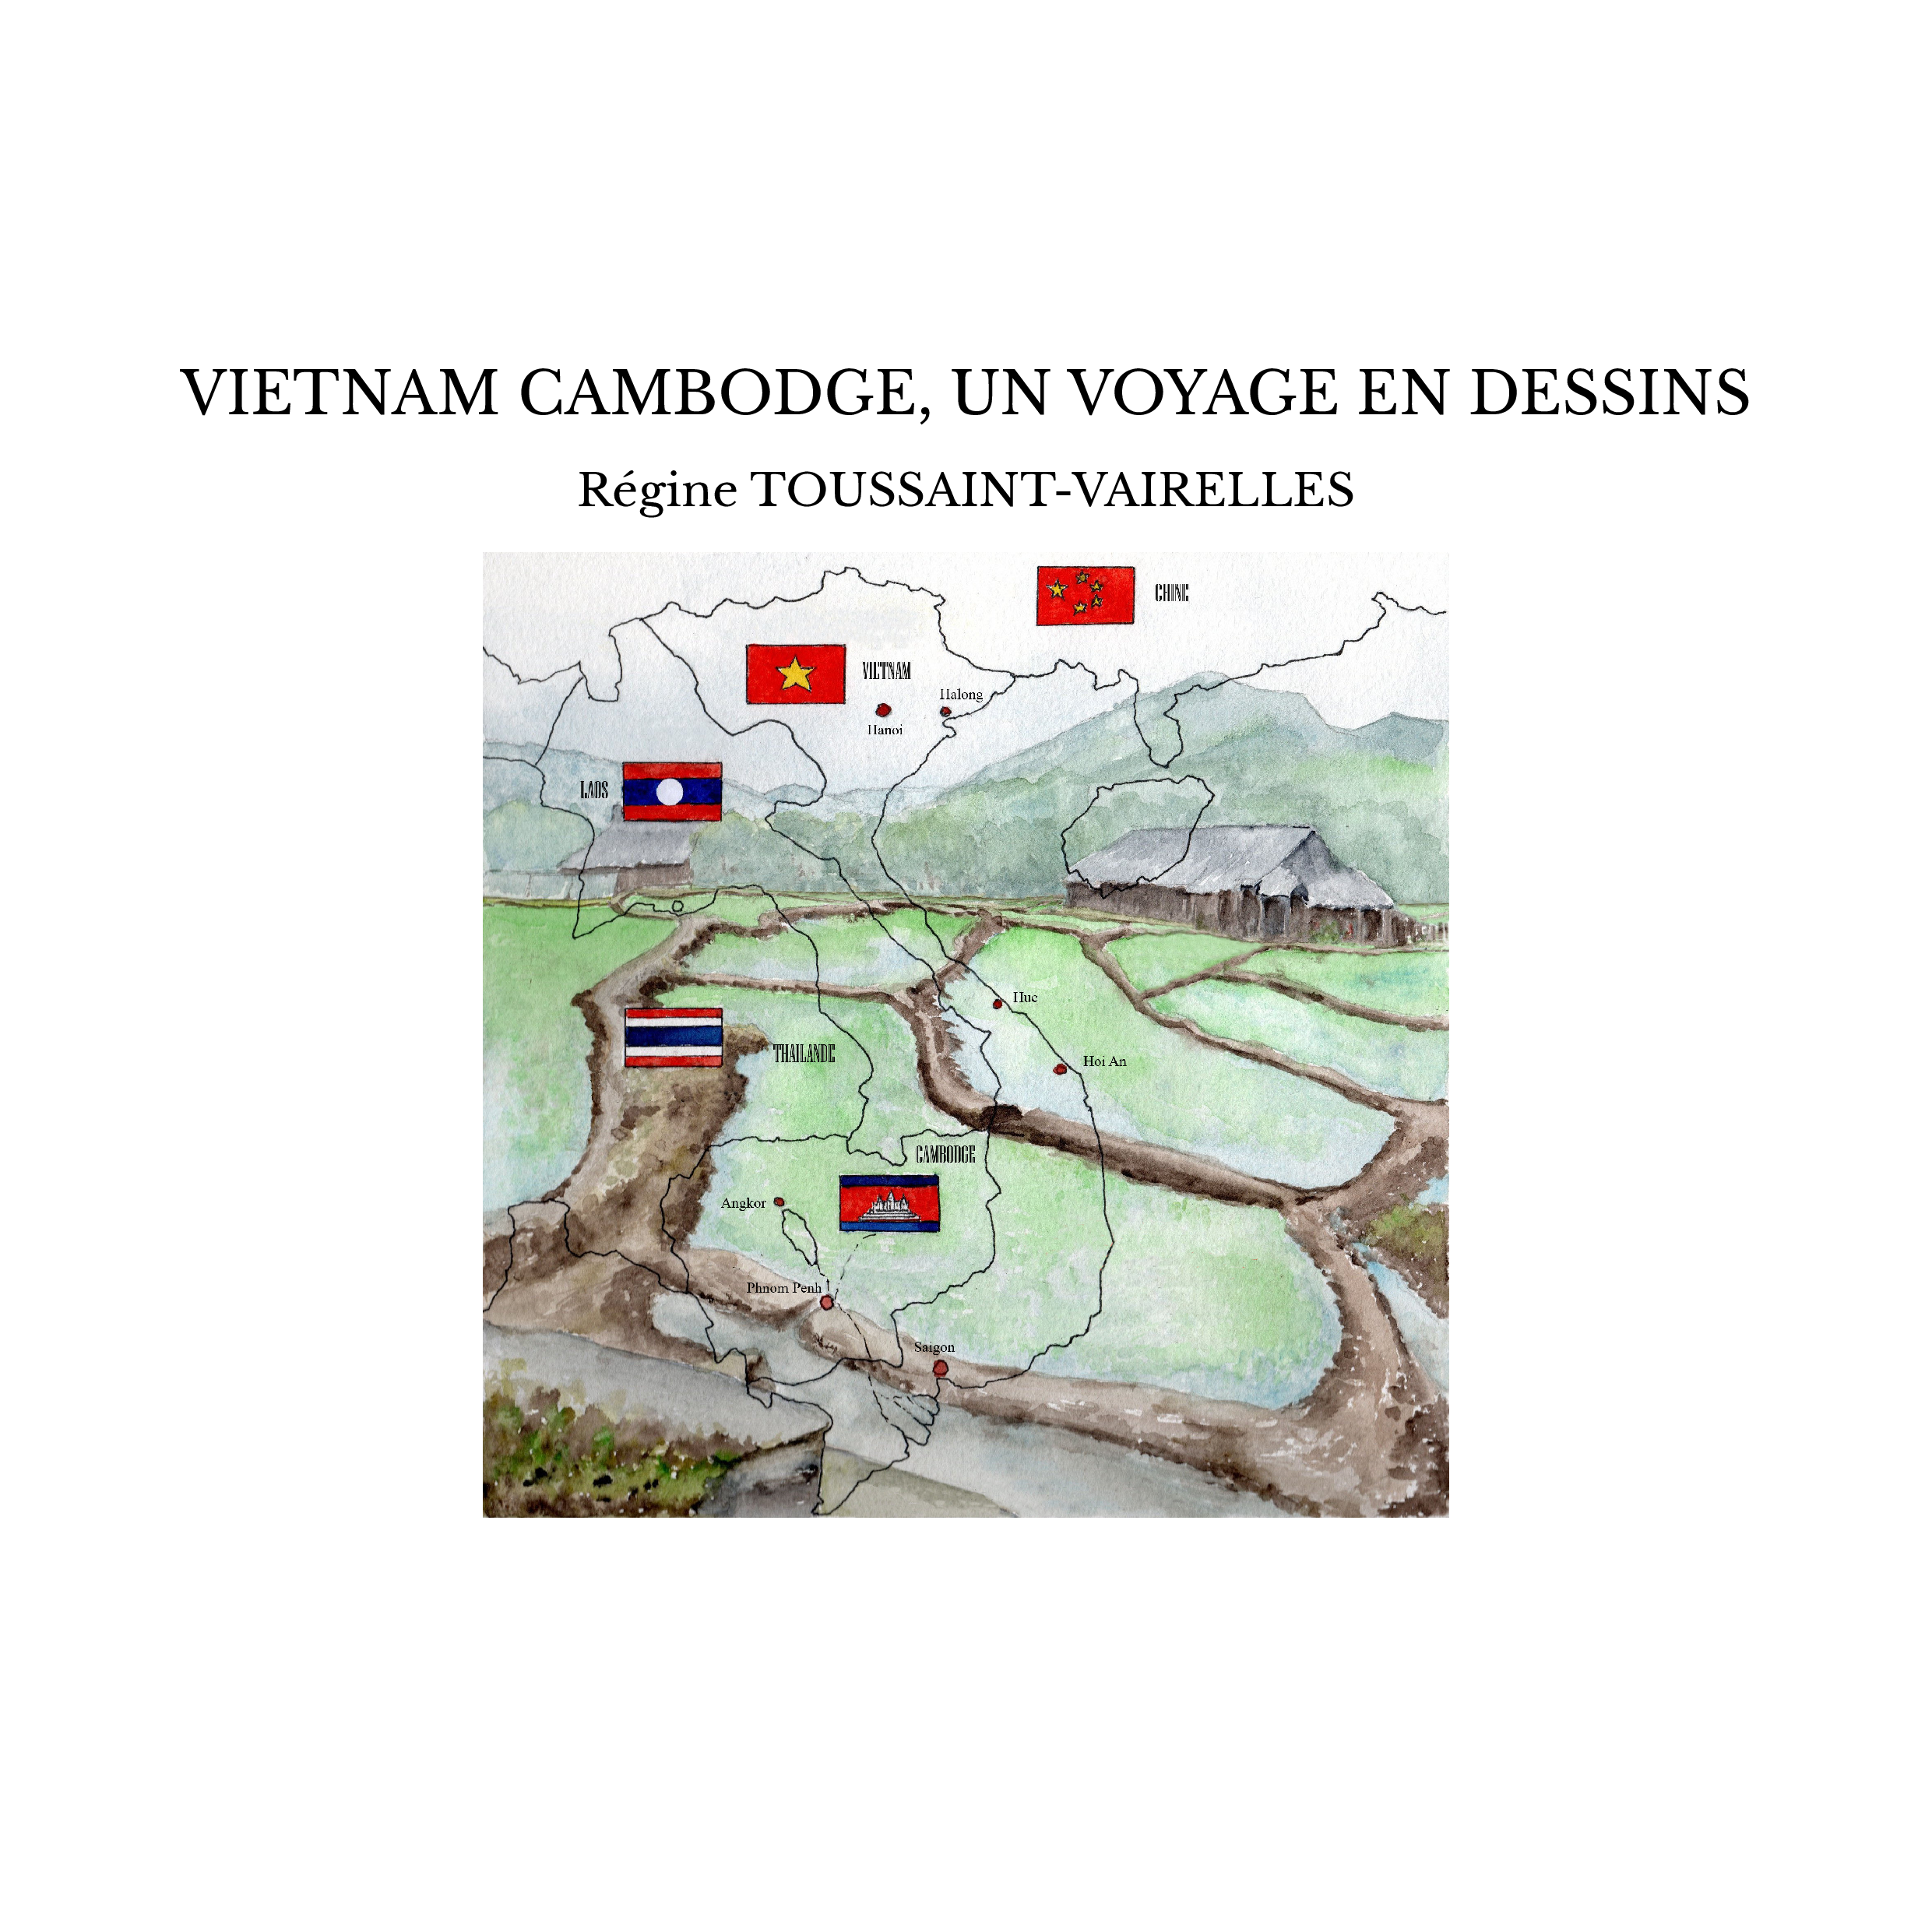 VIETNAM CAMBODGE, UN VOYAGE EN DESSINS